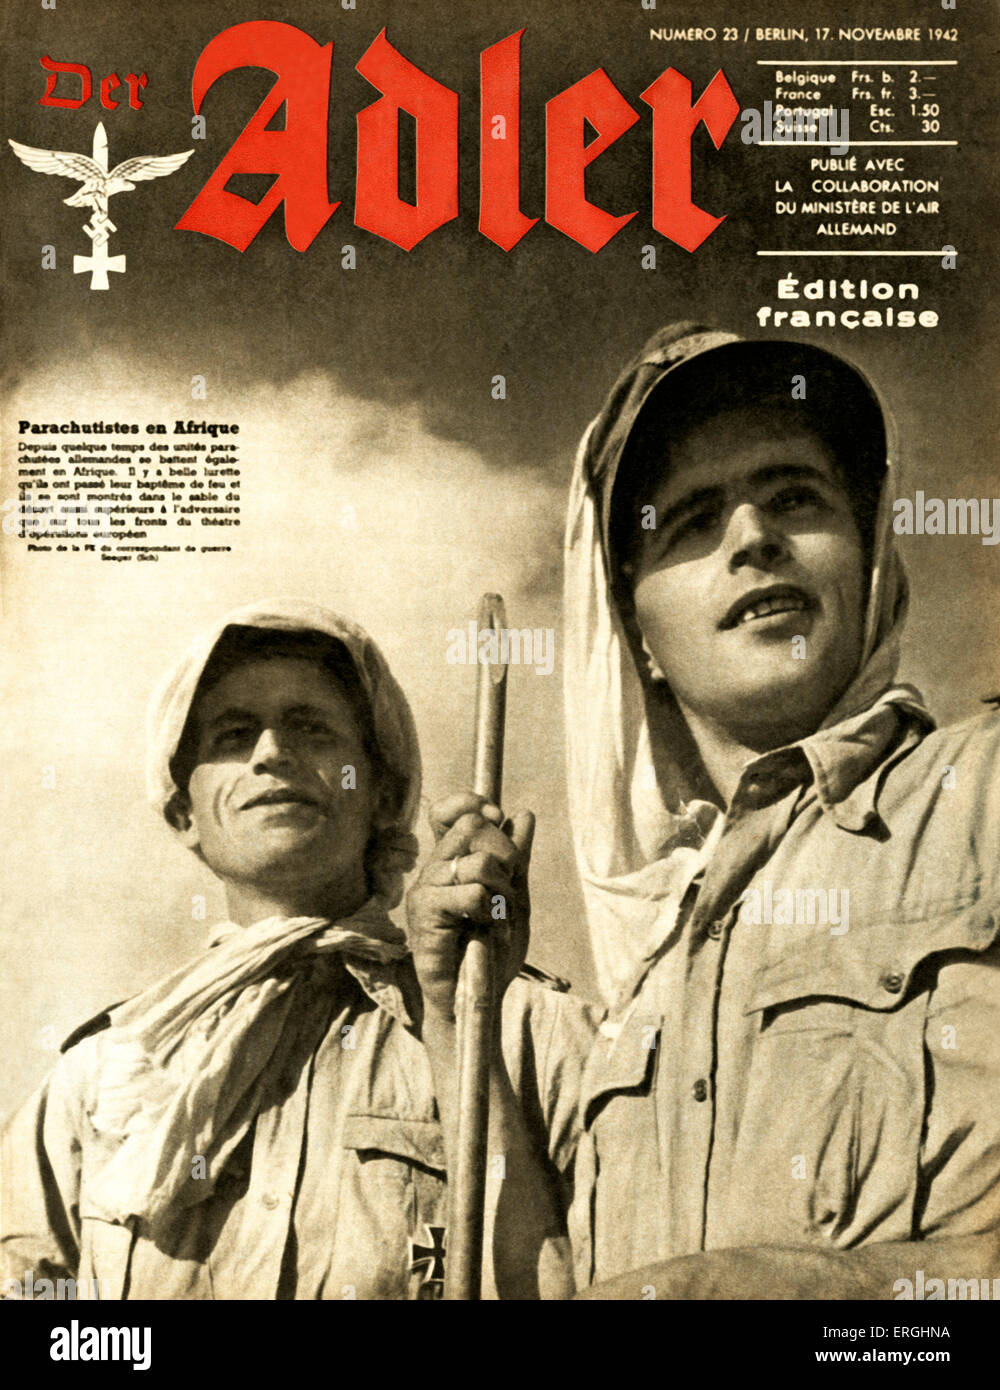 Der Adler, la rivista della tedesca Air Force (Luftwaffe) durante la Prima Guerra Mondiale 2. Coperchio del 17 novembre 1942. Edizione francese. Tedesco Foto Stock